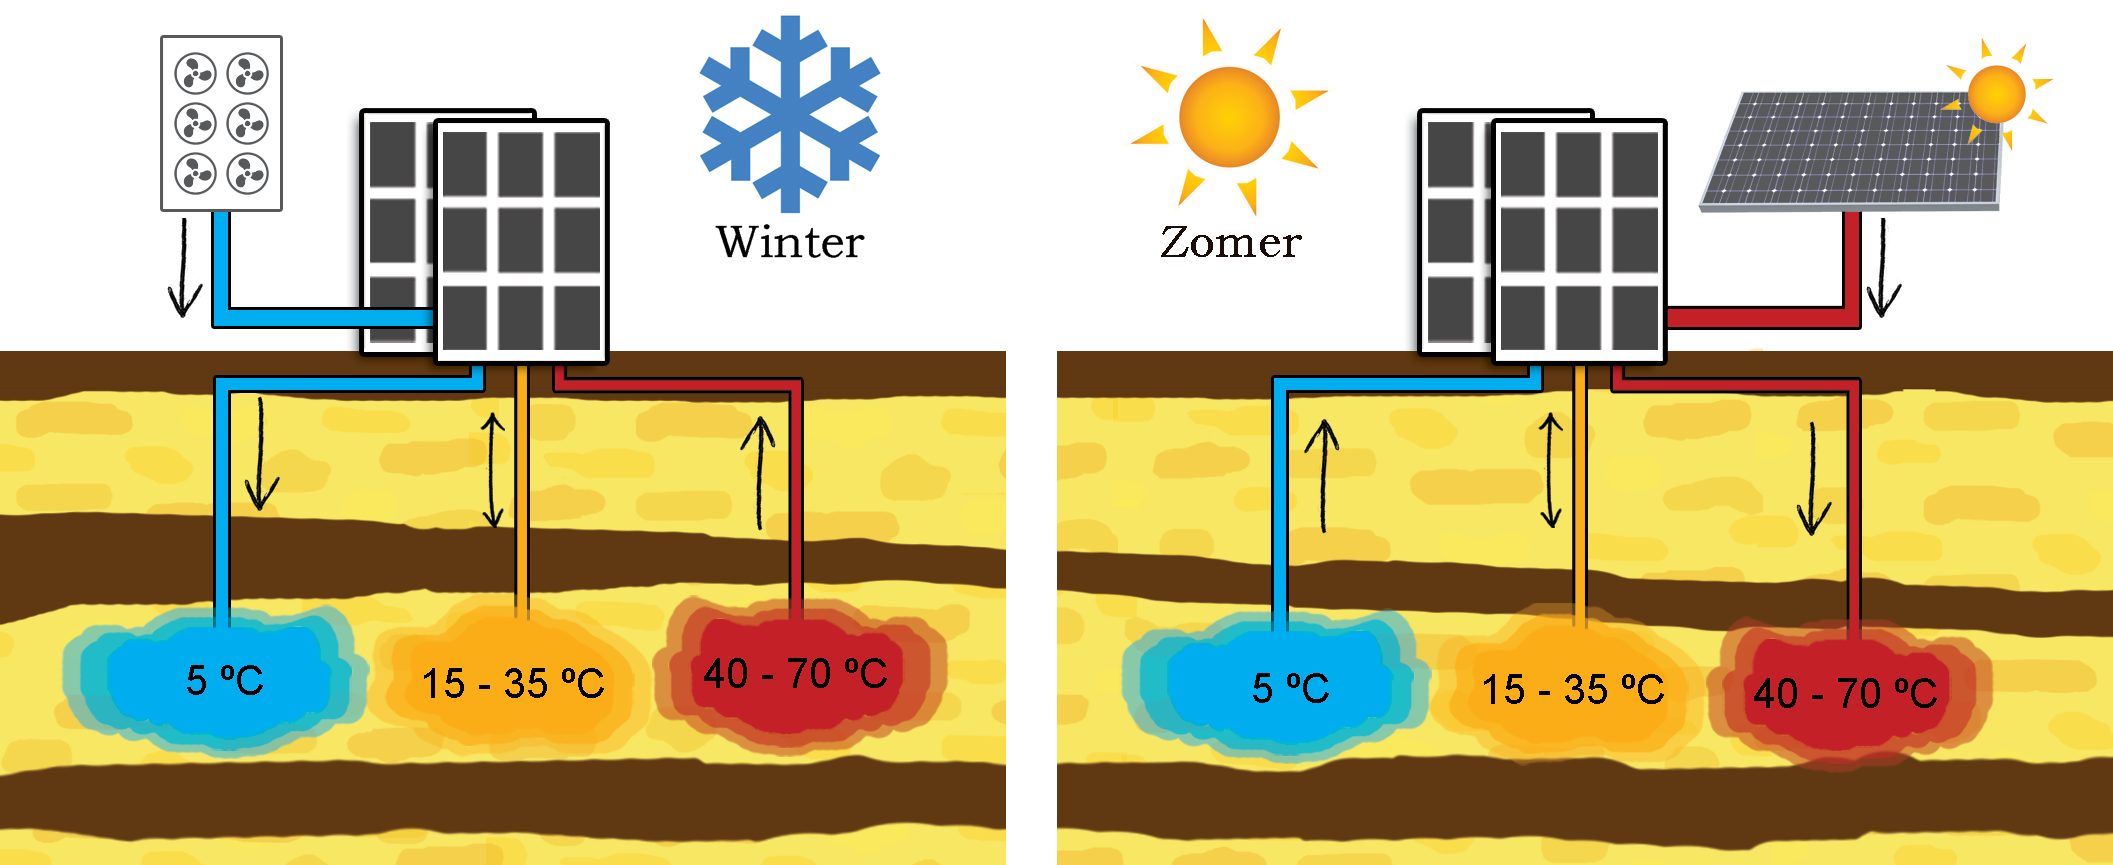 Figuur 1. Schematische weergave van een bodemenergie-tripletsysteem zonder warmtepomp